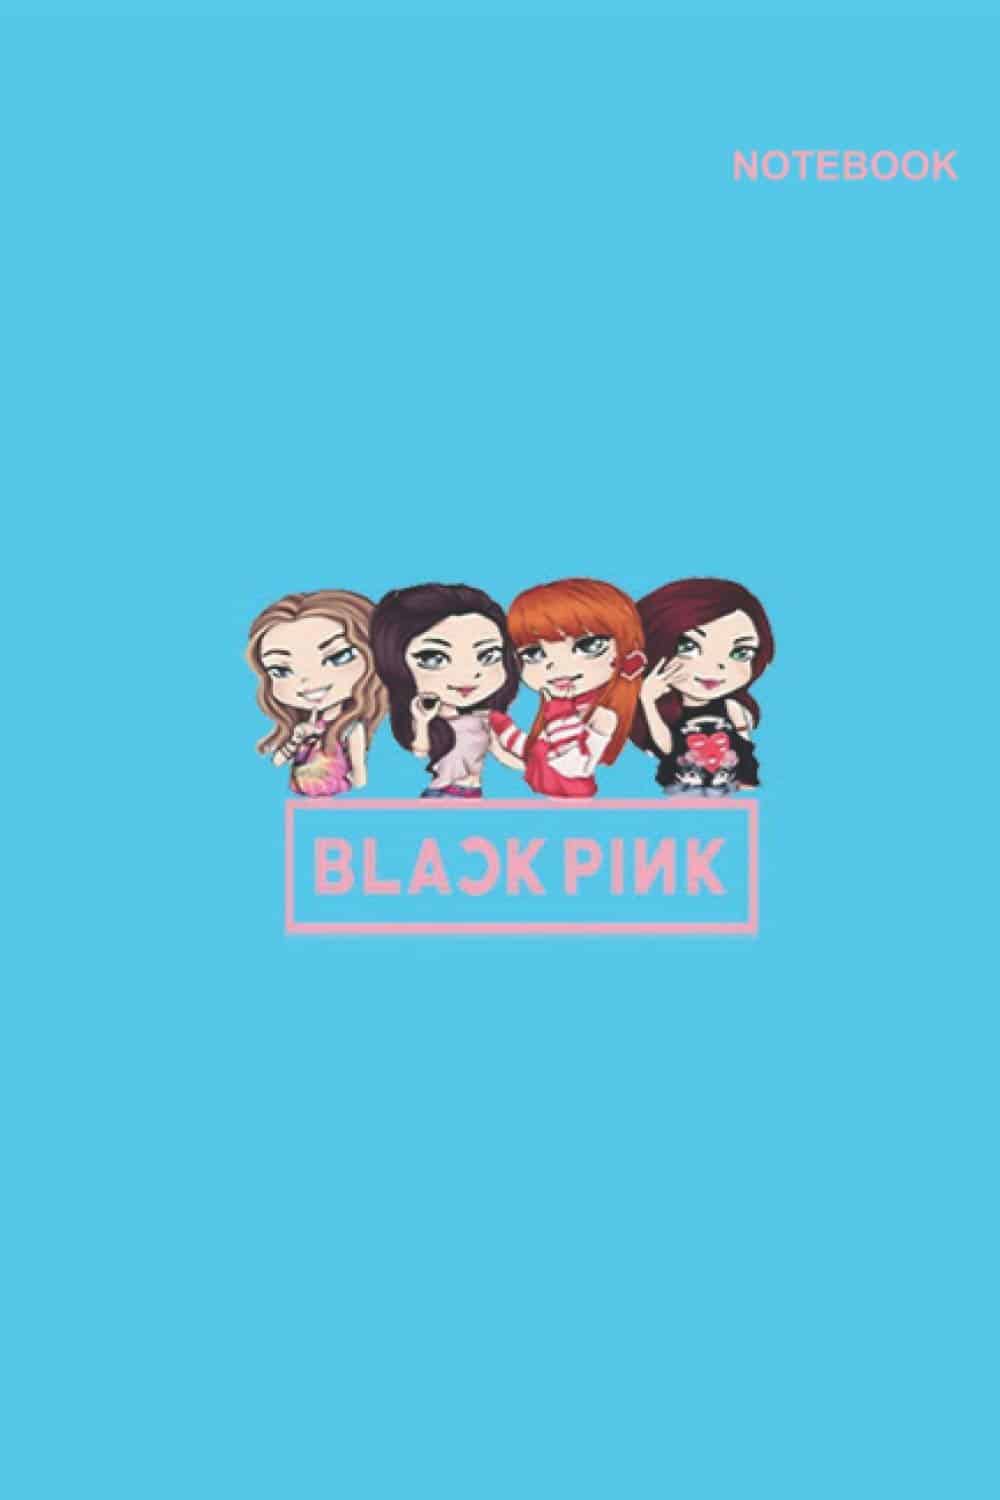 Blackpink Chibi Cute: Đây là những hình ảnh siêu dễ thương và vô cùng đáng yêu của các thành viên Blackpink được đổi mới và thiết kế lại dưới dạng nhân vật chibi để mang lại nụ cười cho người xem.